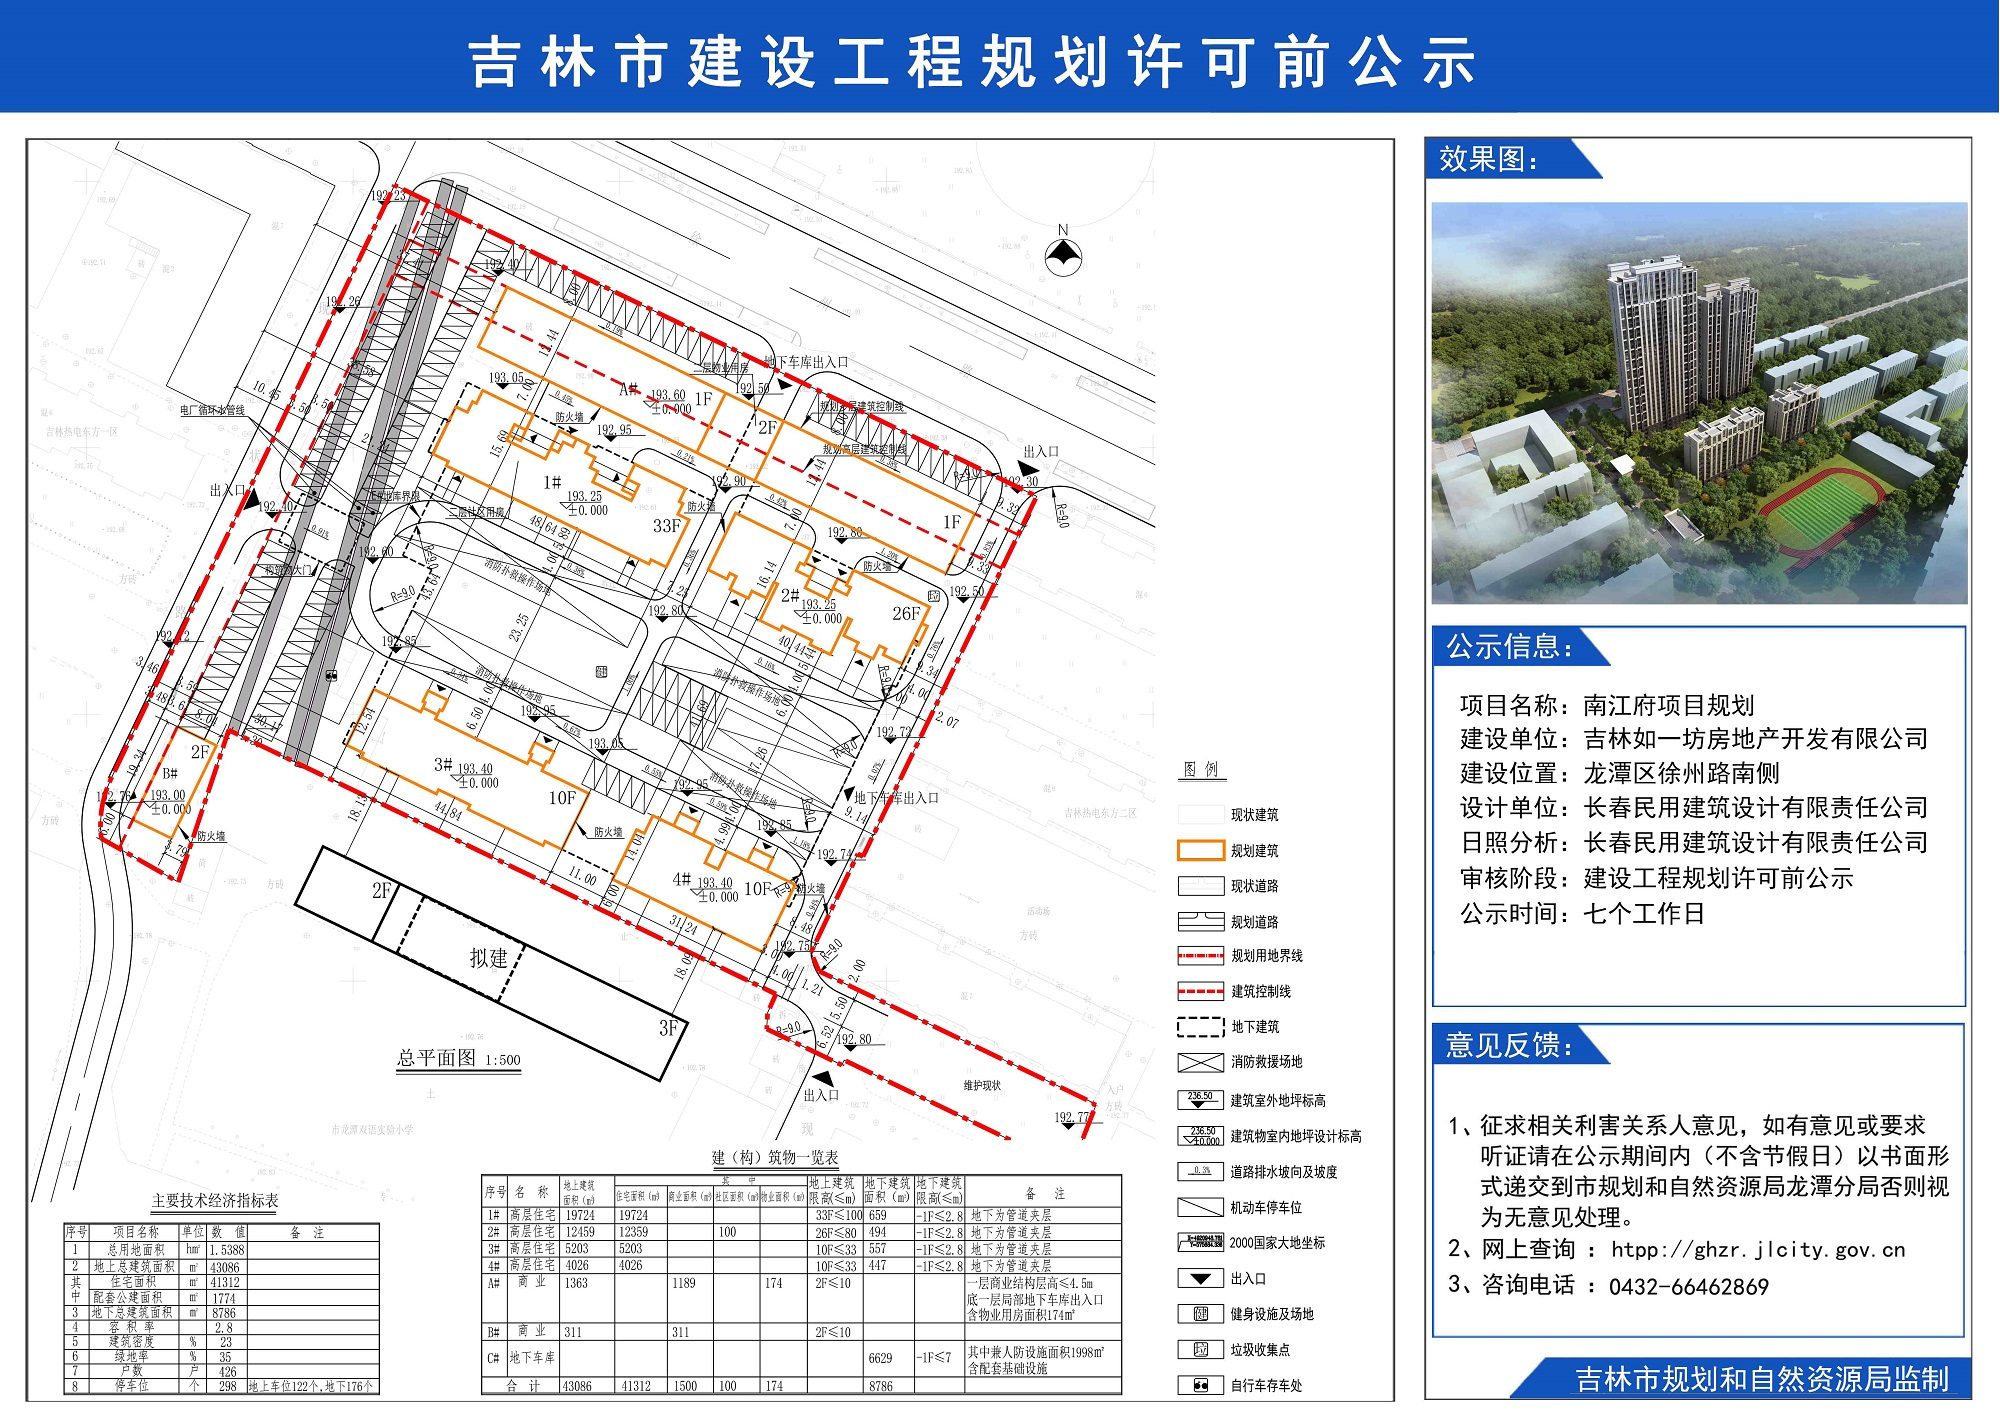 吉林如一坊房地产开发有限公司南江府项目公示